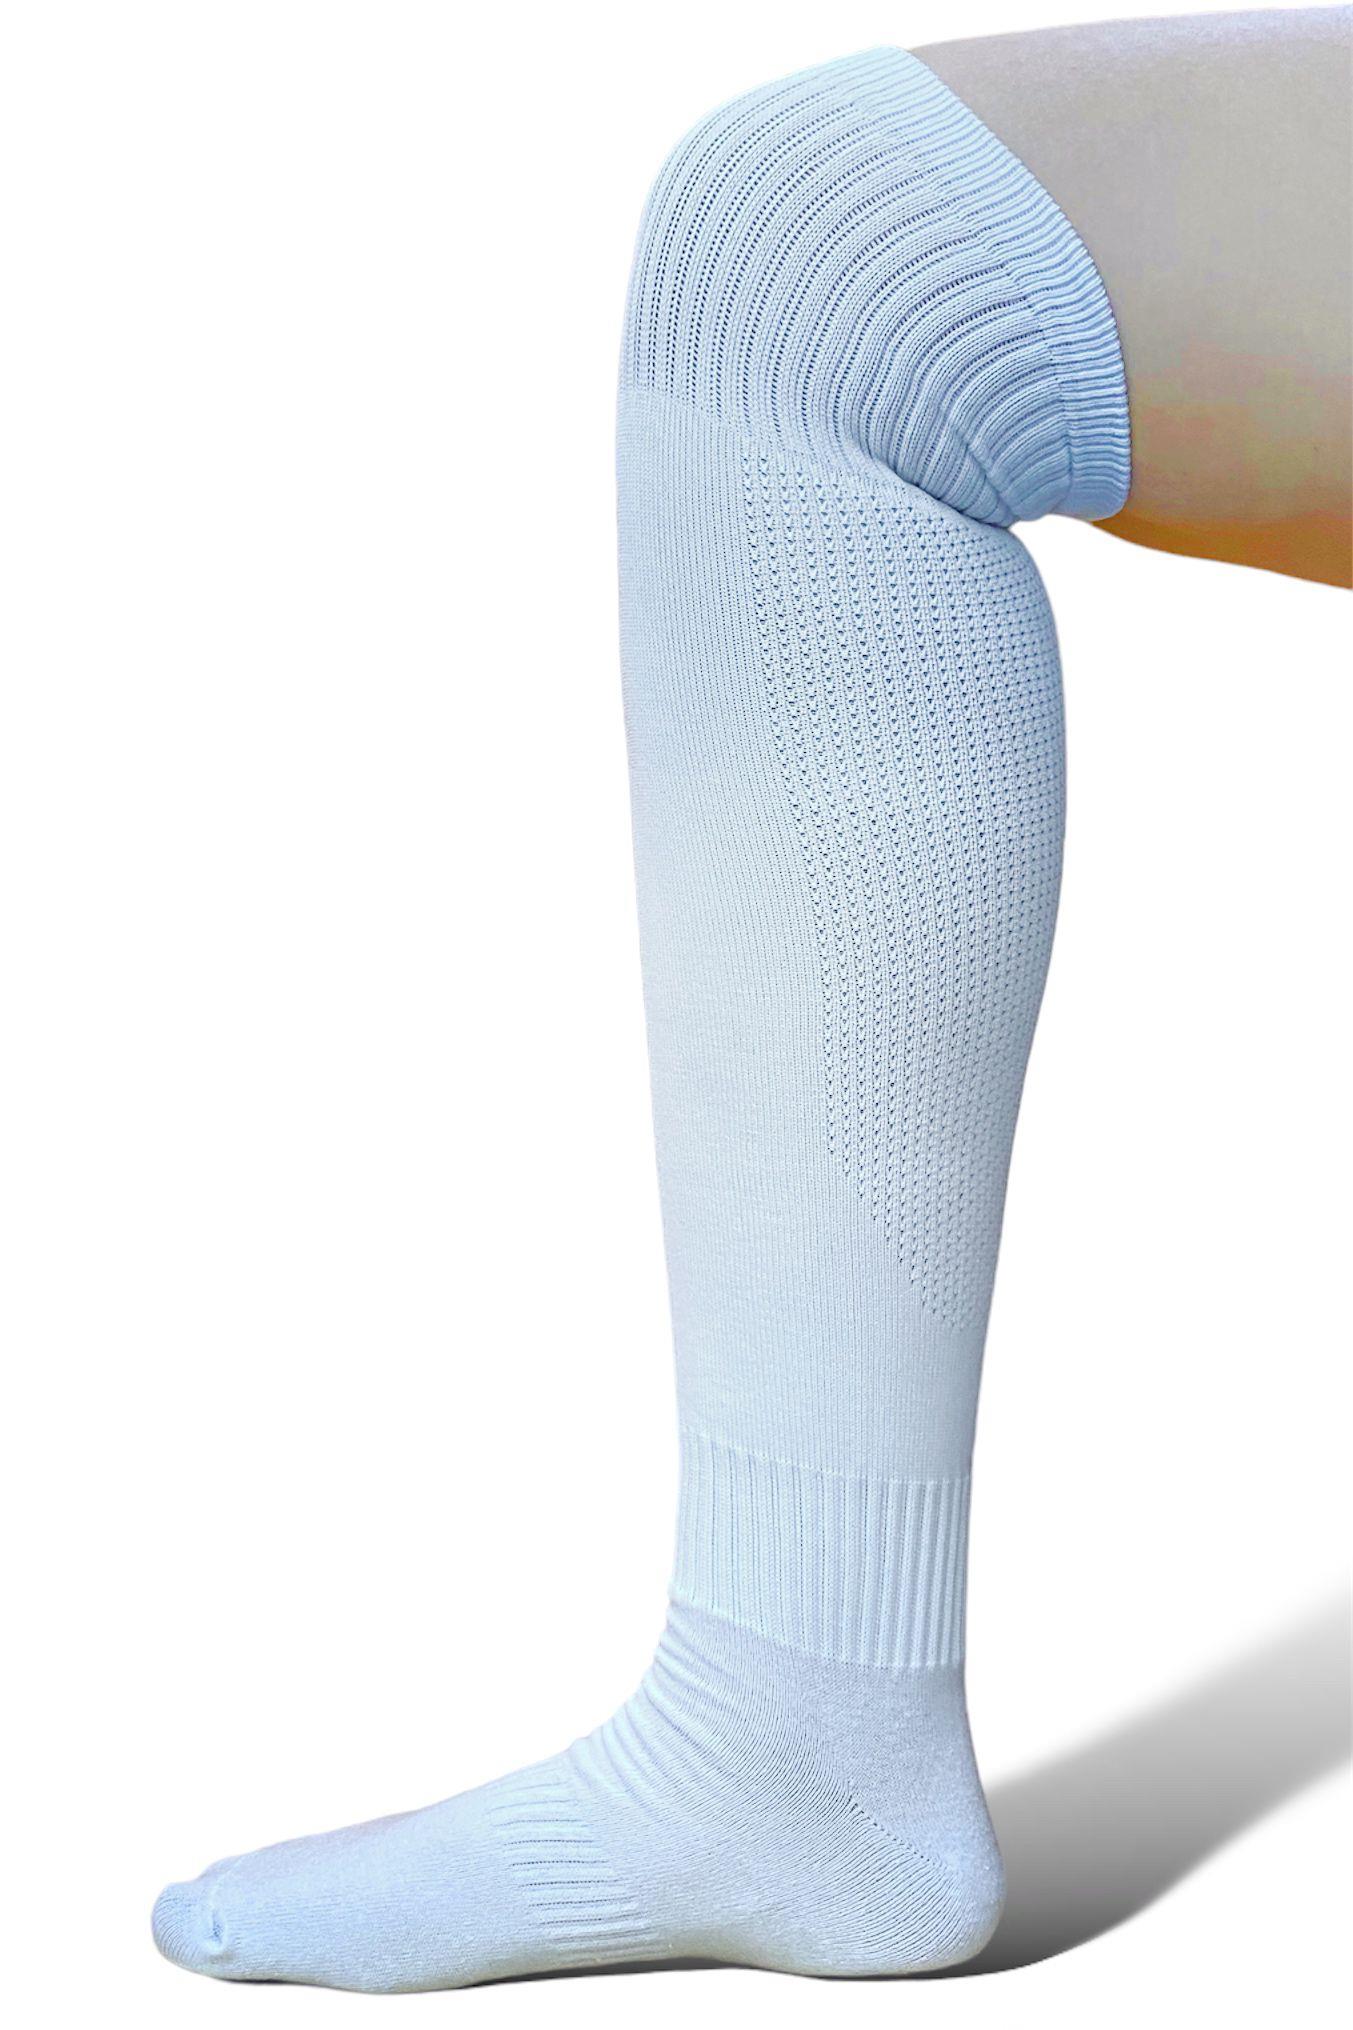 Yetişkin Profesyonel Baldır Fileli Beyaz Futbol Çorabı Tozluk Halı Saha  Çorabı Konç (40-46) KARTAL-PROF